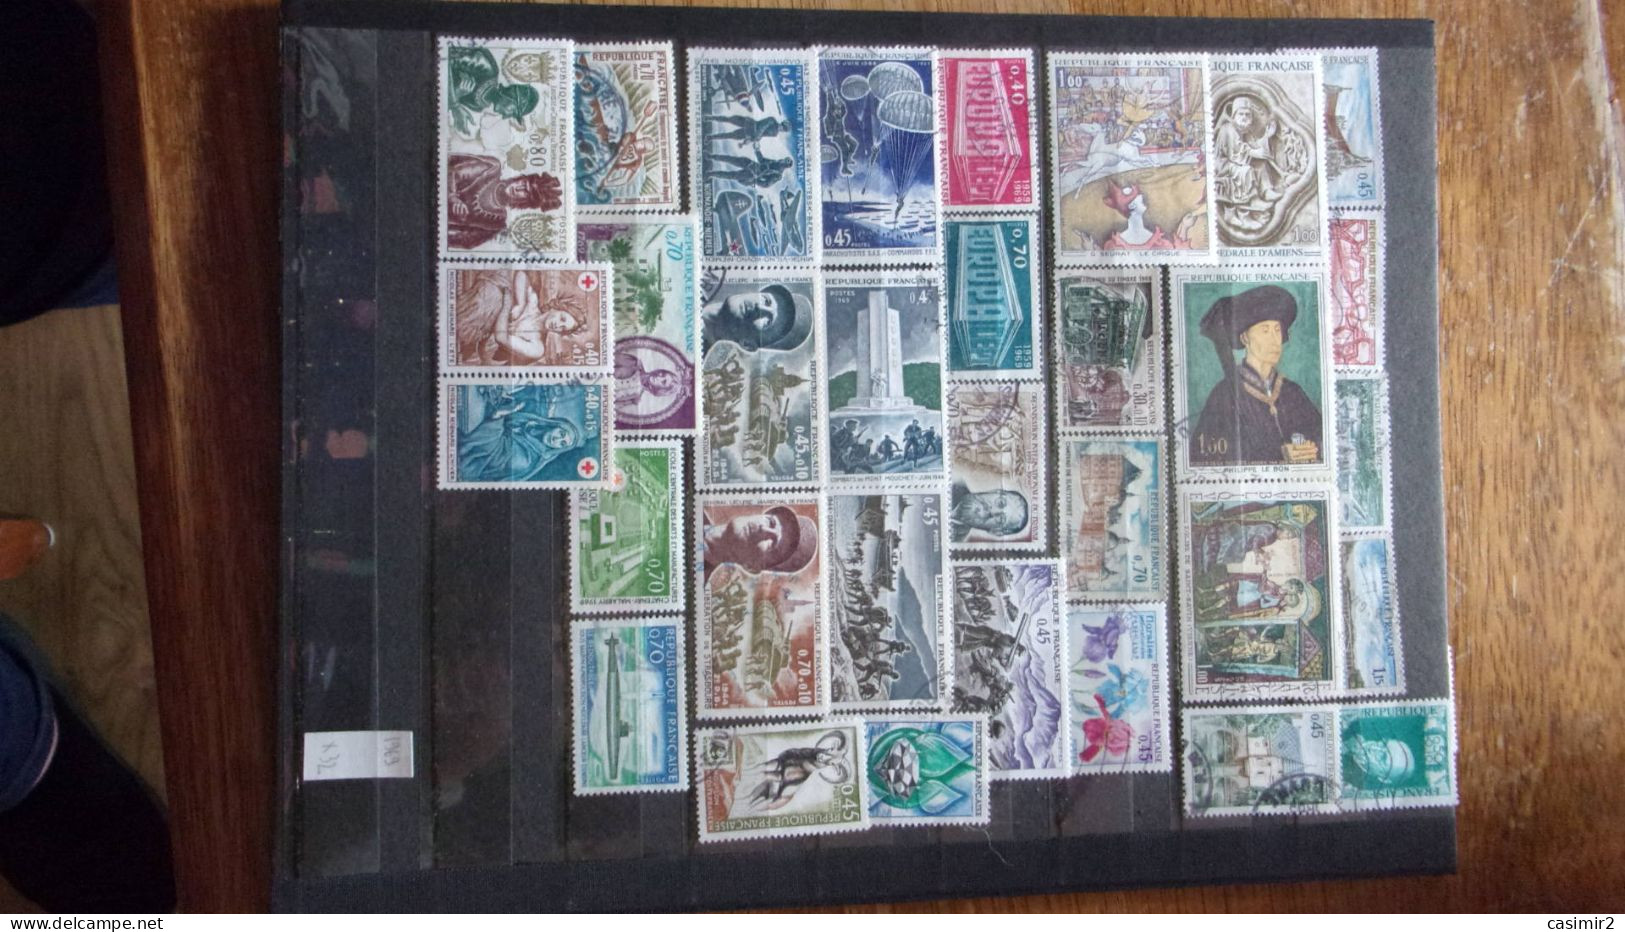 ACHETEZ EN LOT PRIX UNIQUE 0.10€ FRANCE ANNEE 1969 LOT 10 - Lots & Kiloware (mixtures) - Max. 999 Stamps